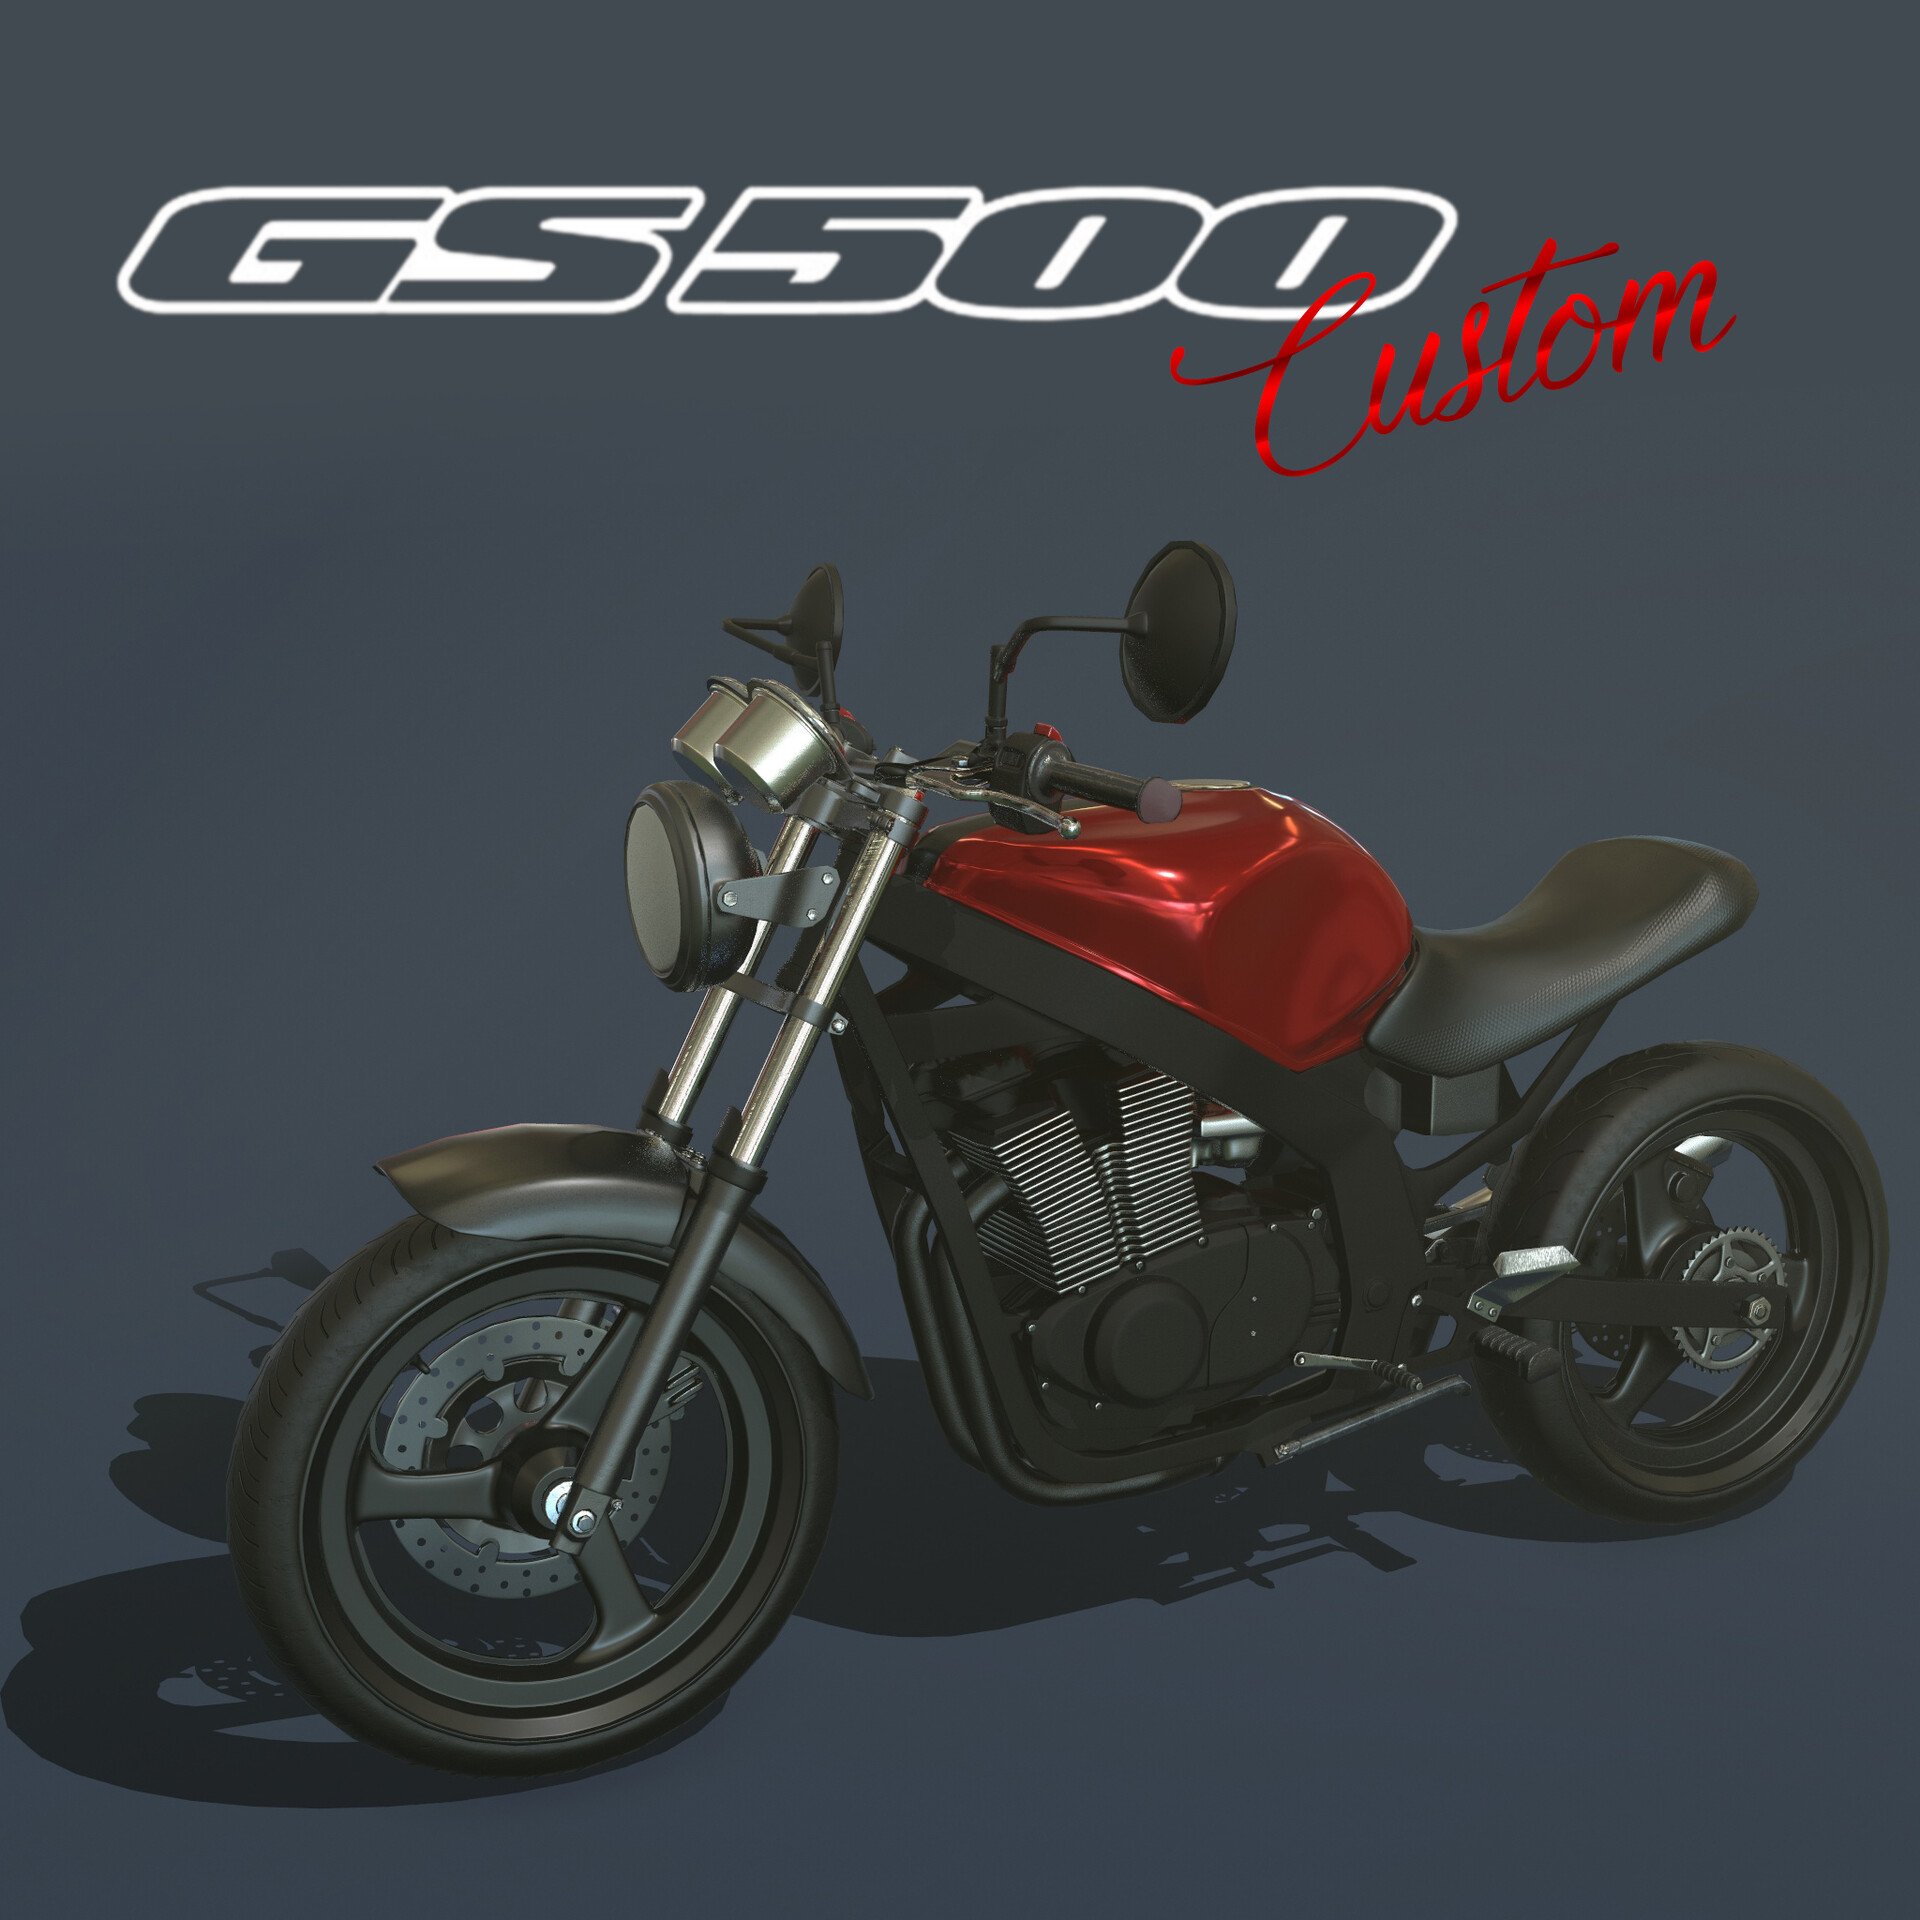 gs500 custom